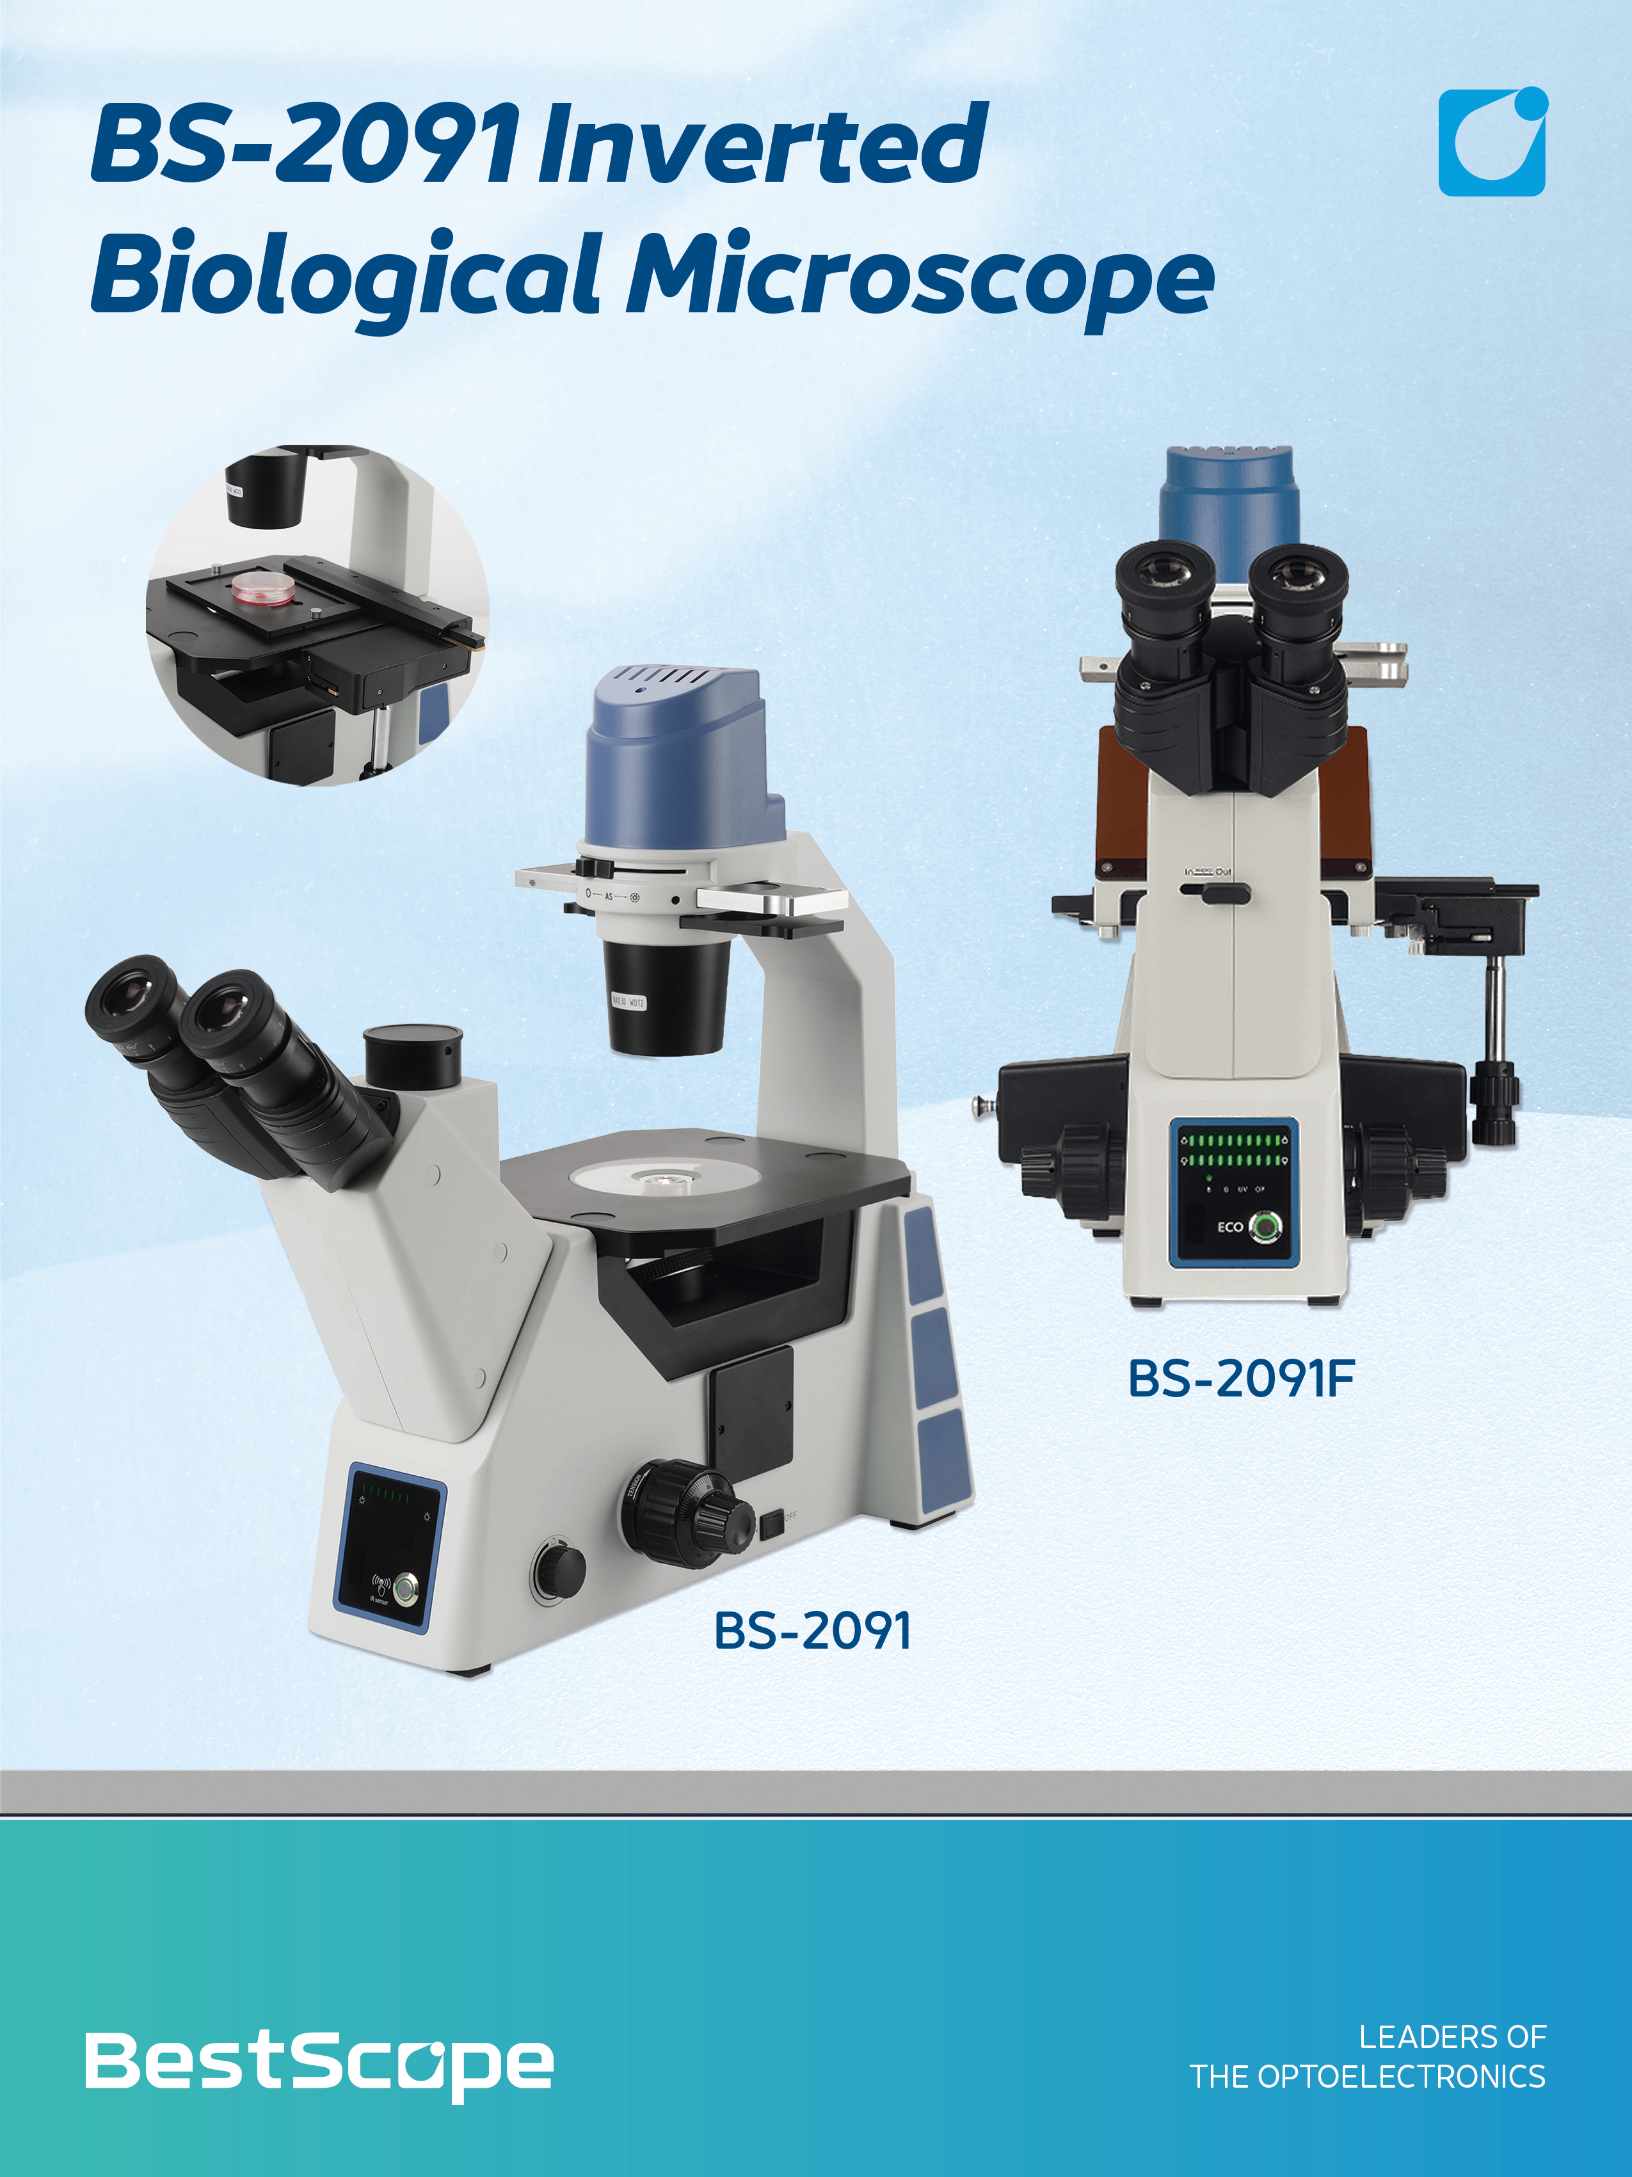 میکروسکوپ بیولوژیکی معکوس BS-2091